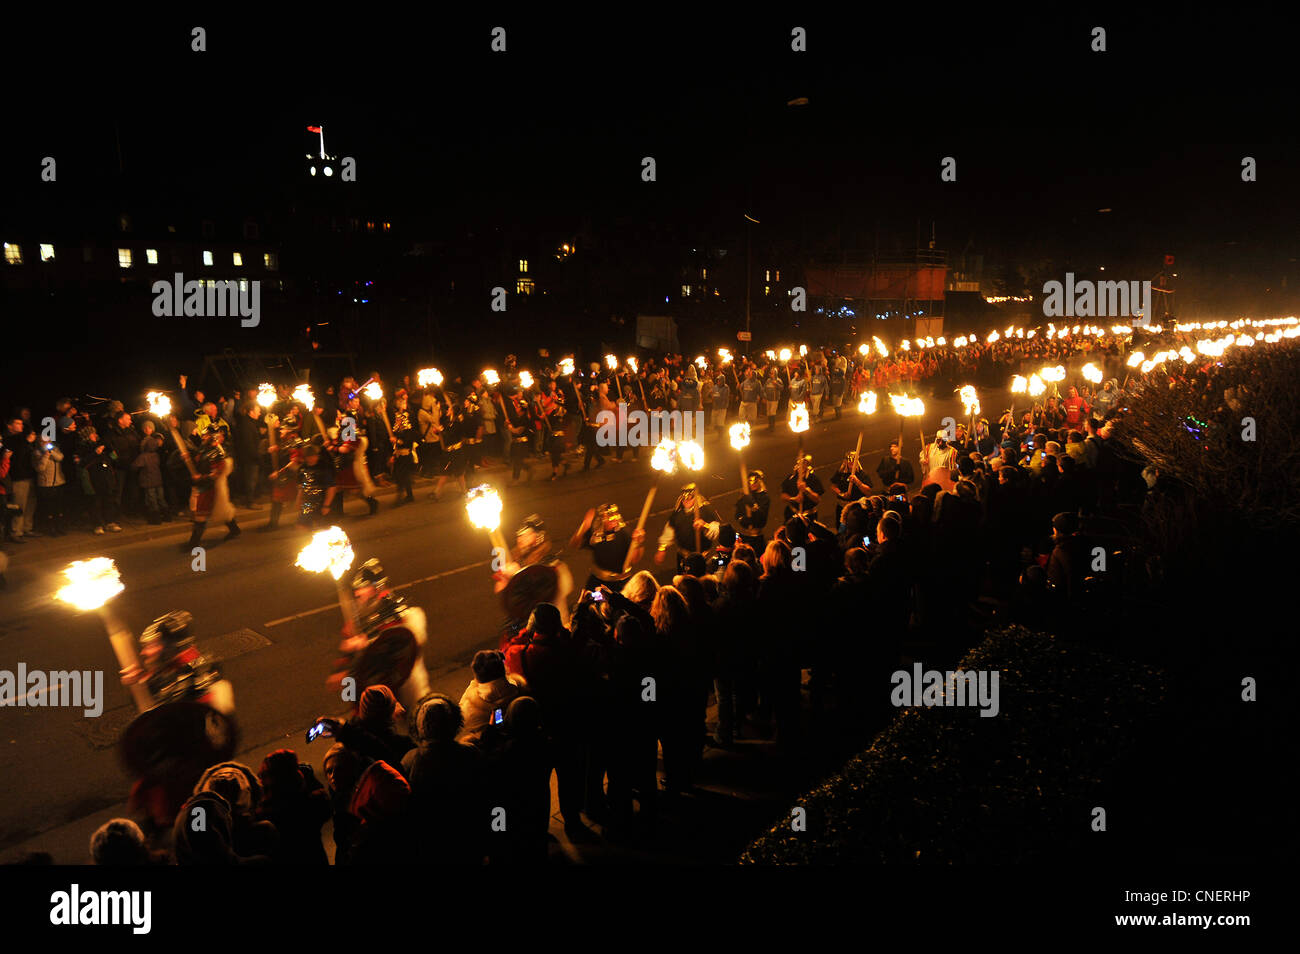 Up Helly Aa-Festival in Lewrwick, Shetland-Inseln. Bis zu zweitausend Mann beteiligen Sie sich die Wikinger Feuerfestival. Stockfoto